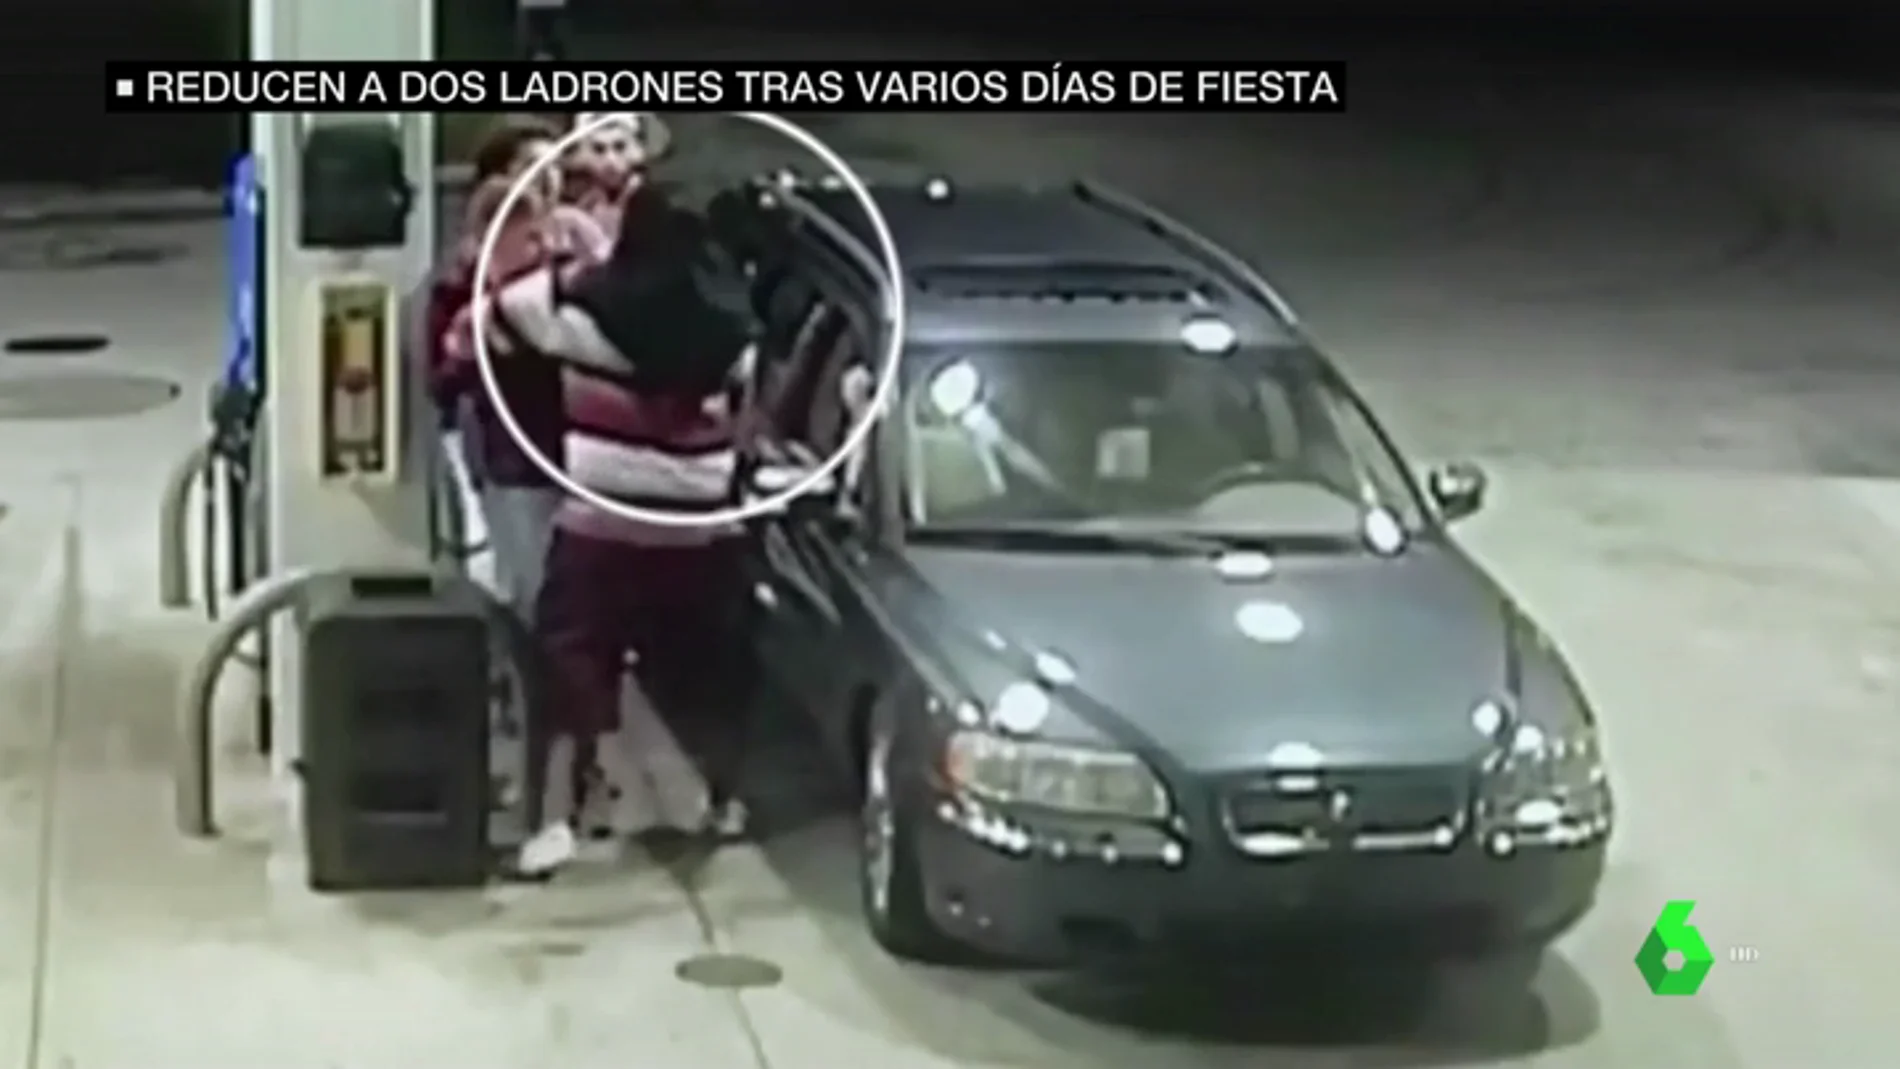 Un grupo de jóvenes reduce a dos ladrones en una gasolinera tras varios días de fiesta